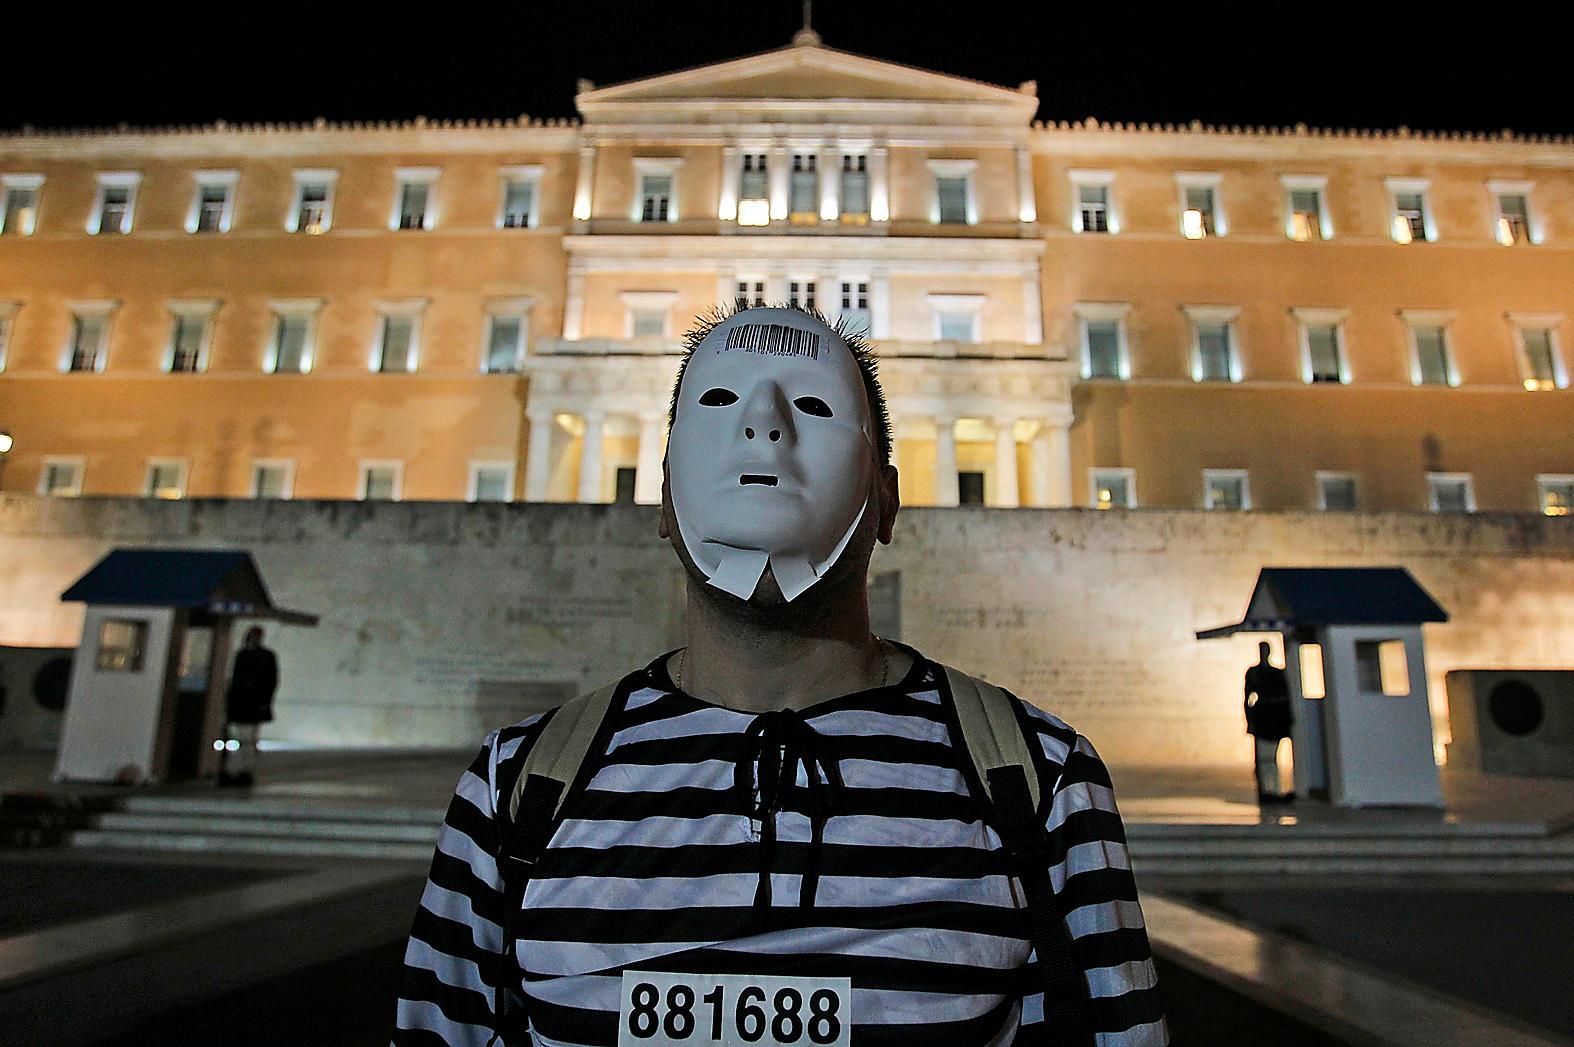 SPELAR ETT HÖGT SPEL Greklands premiärminister Papandreou tvingas genomgå en förtroendeomröstning på fredag, Förlorar han blir det ingen folkomröstning. Utanför det grekiska parlamentet pågick i går demonstrationer mot nedskärningarna.